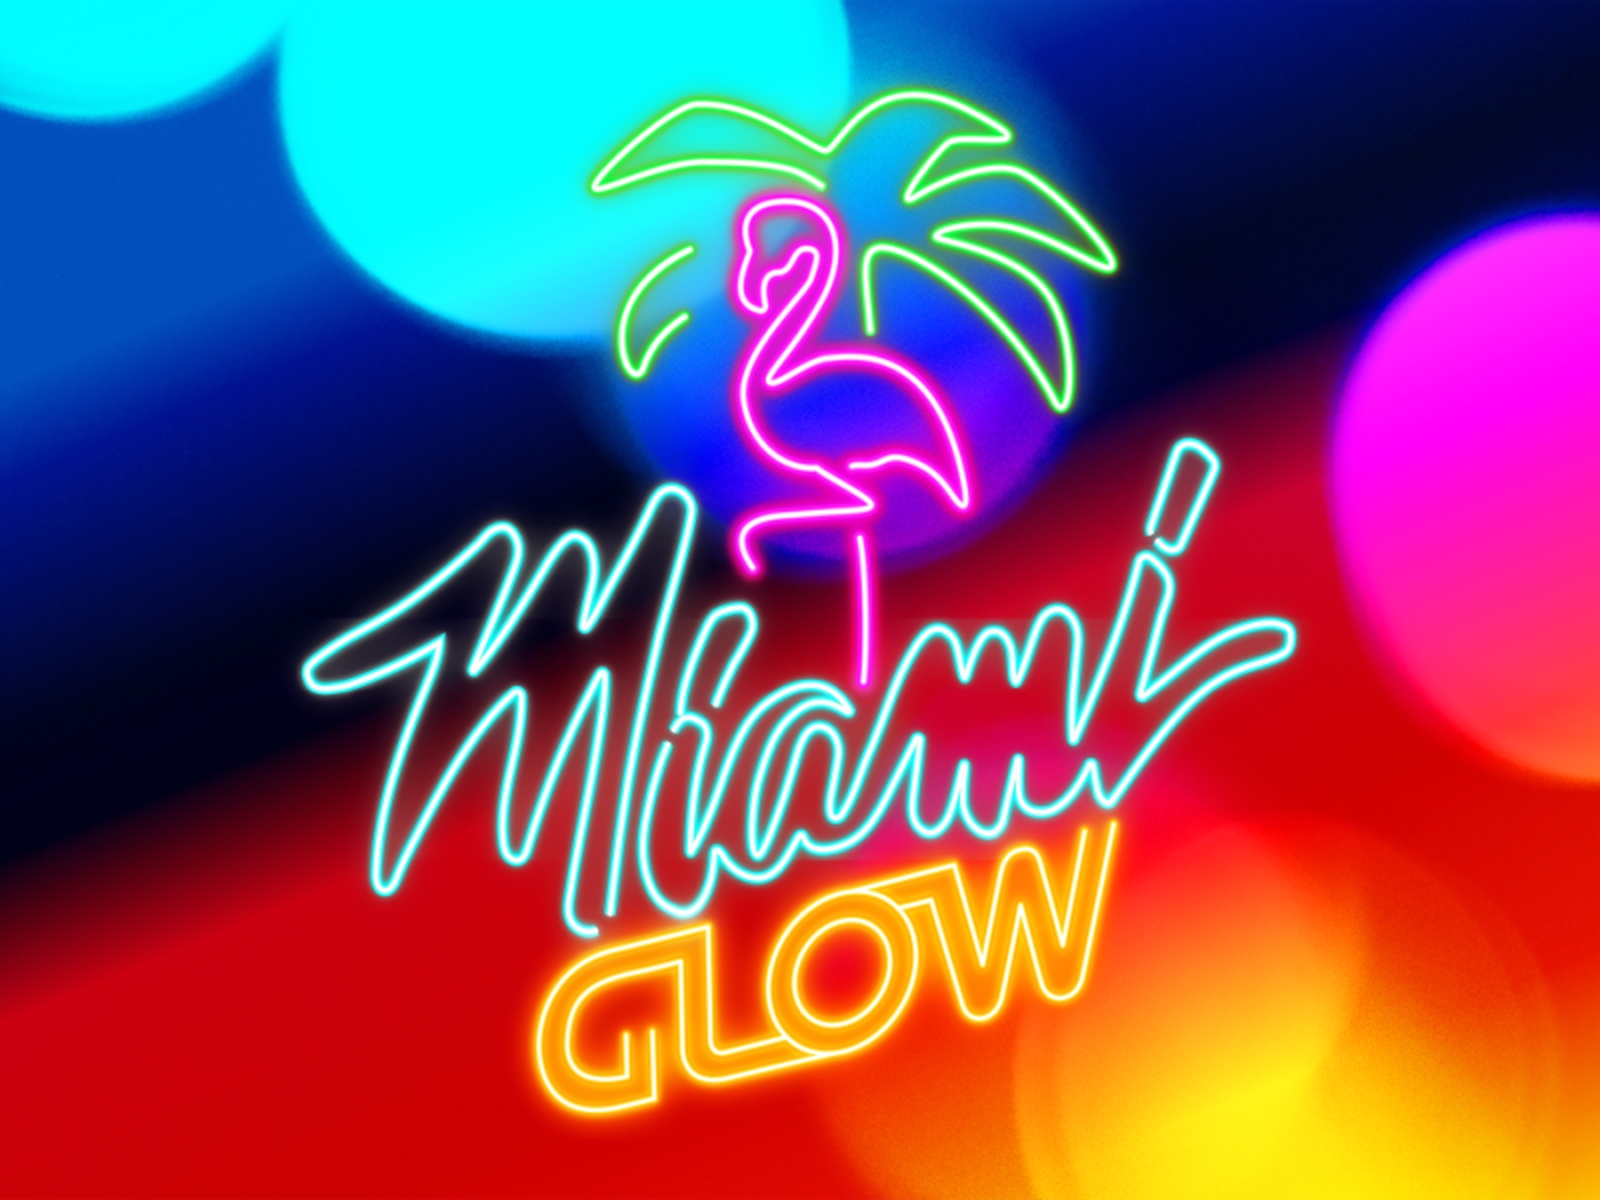 Miami Glow demo